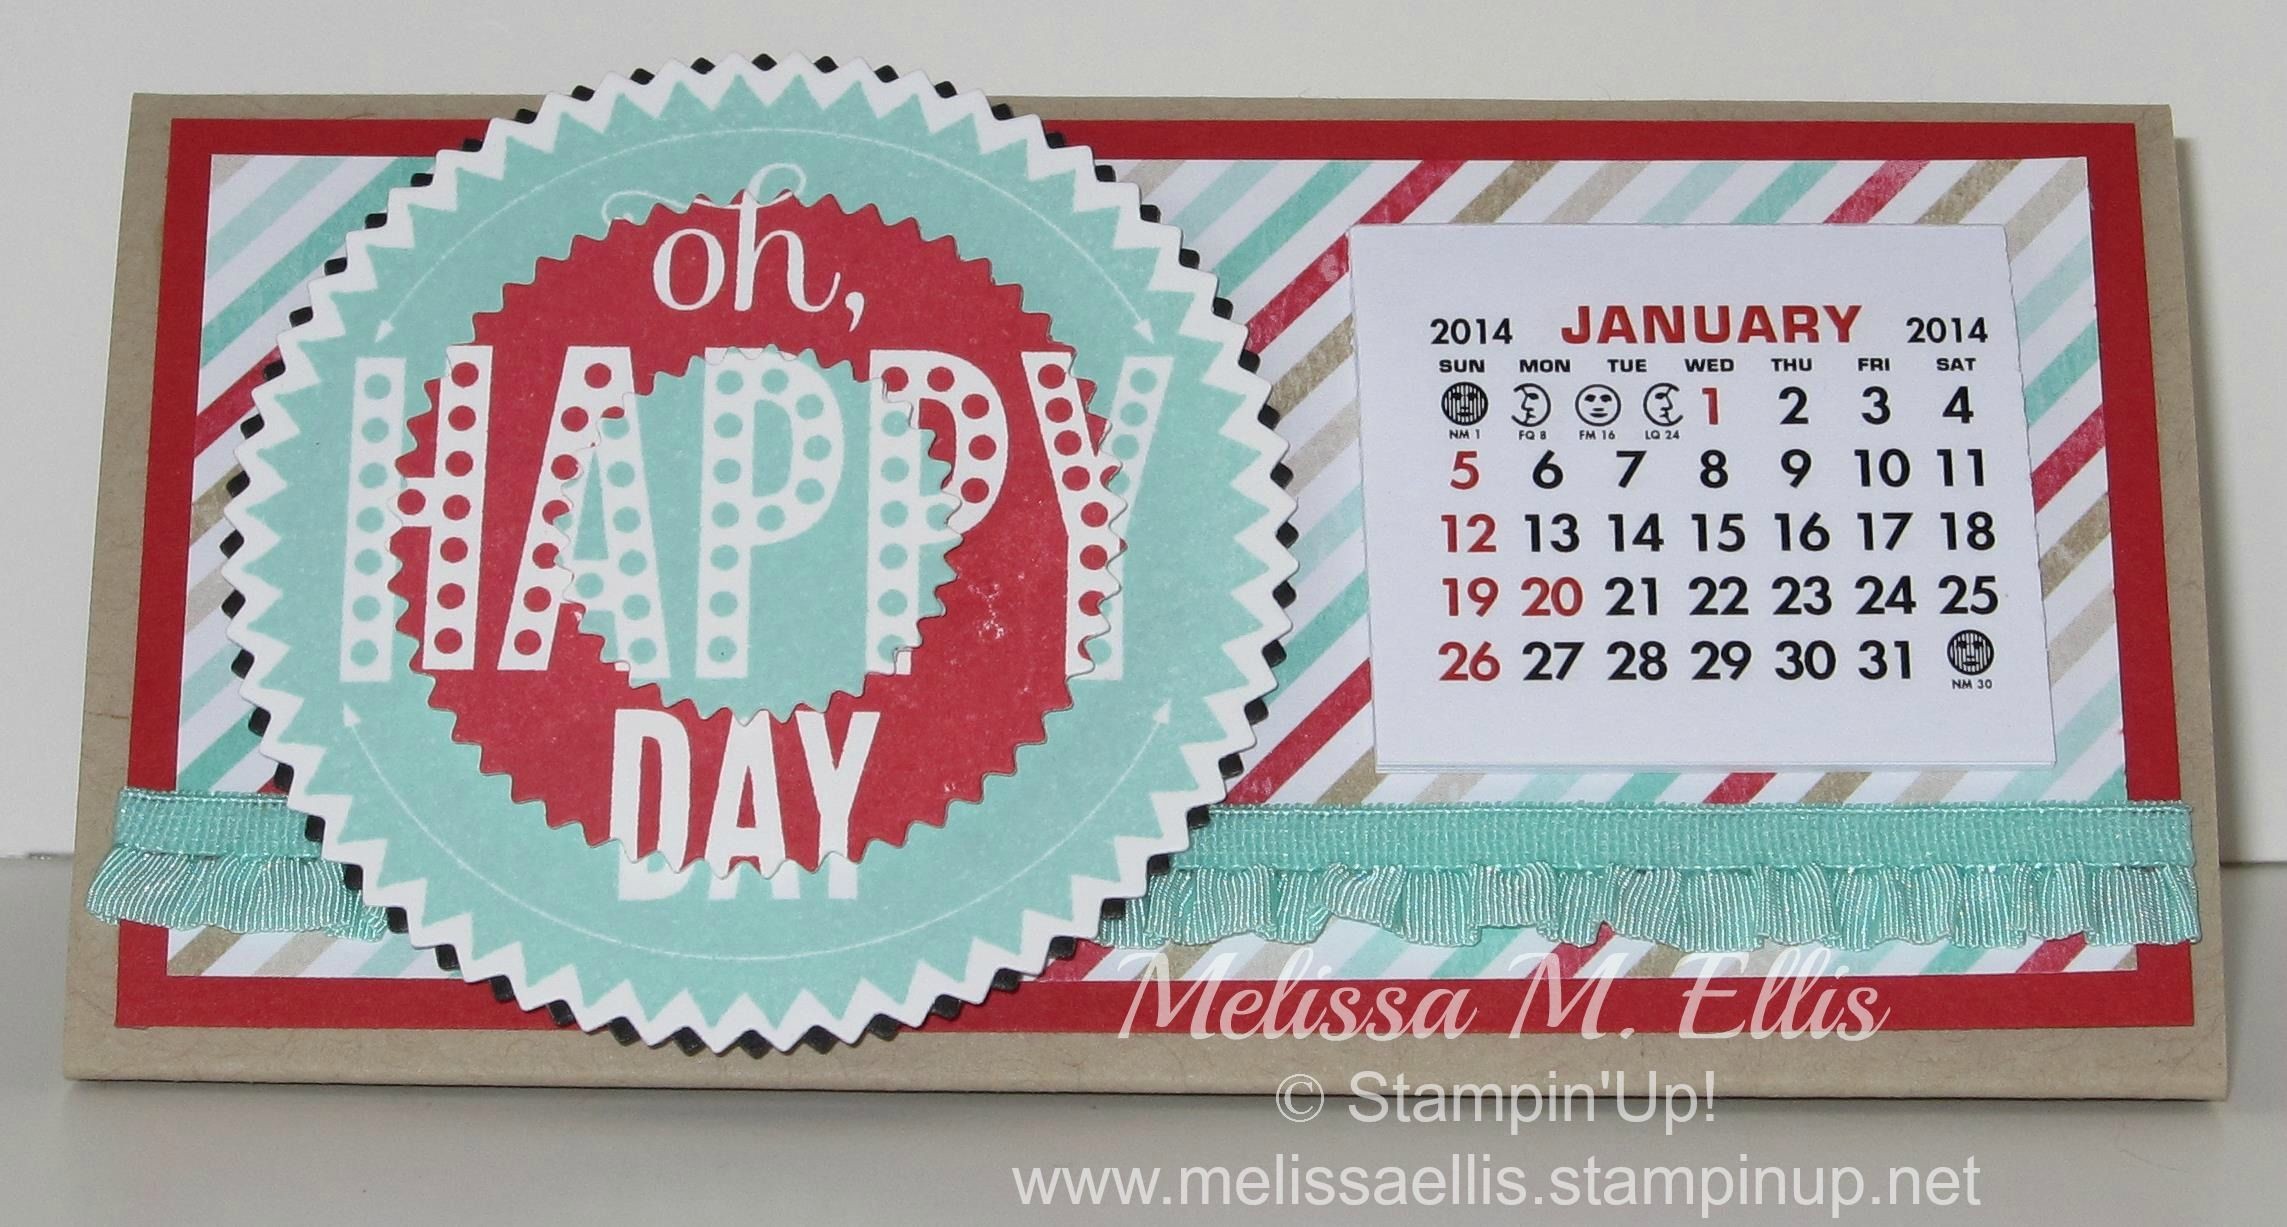 Papercraft Calendar 2014 Edition Calendar Using Starburst Sayings Calendar Stampin Up